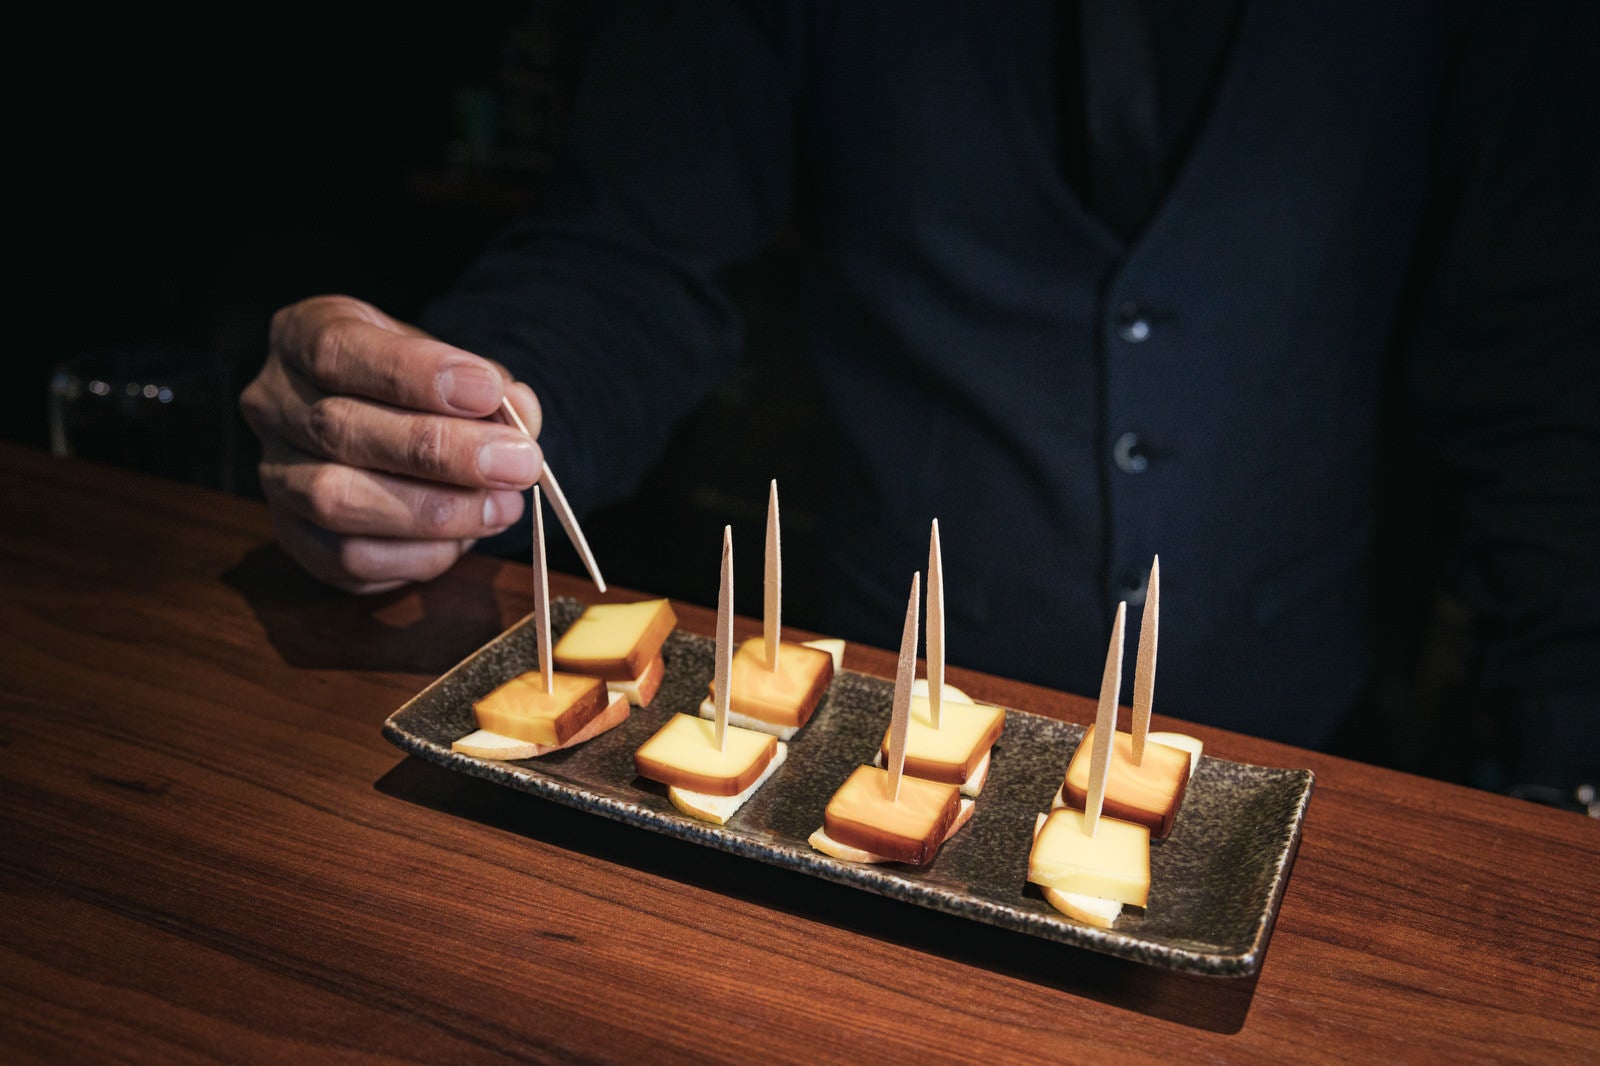 「一口サイズに盛り付けられたスモークチーズの燻製」の写真